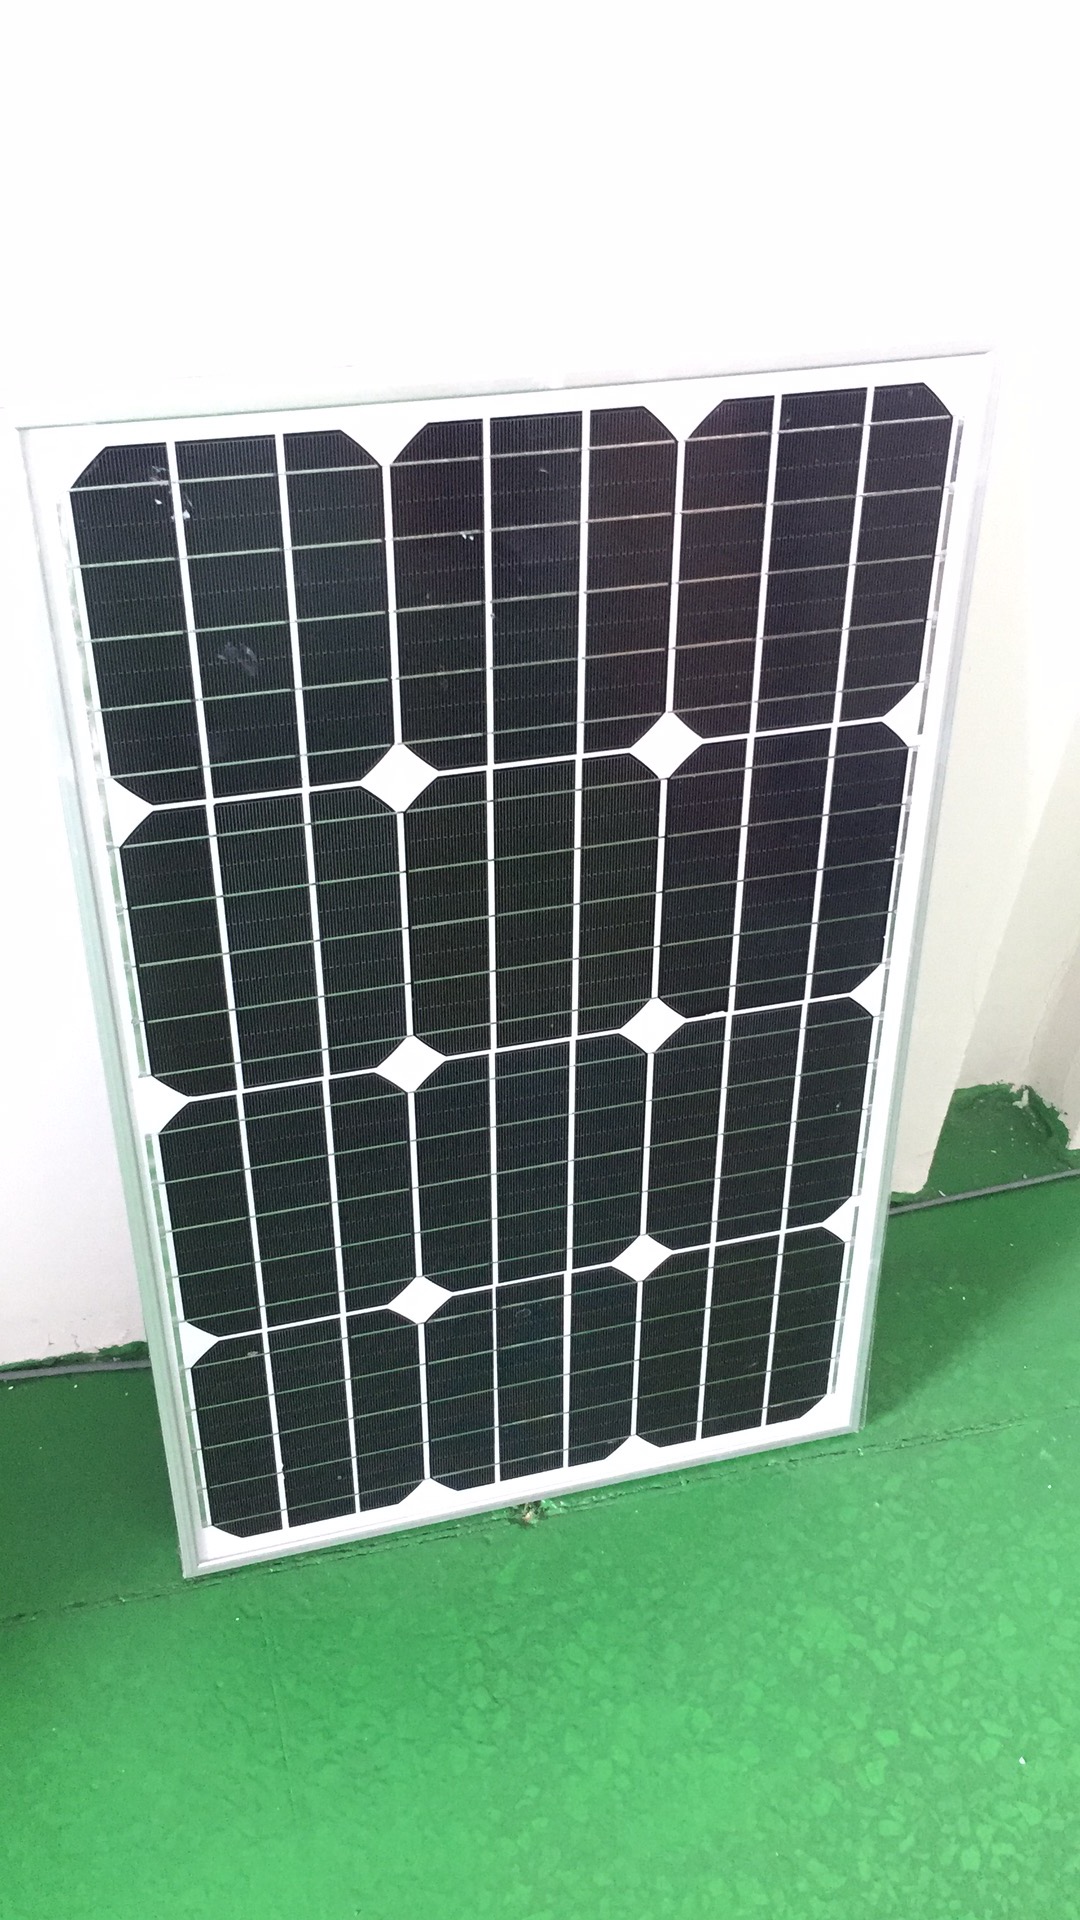 一体式路灯太阳能板 一体式路灯太阳能板直销 一体式路灯太阳能板价格 一体式路灯太阳能板厂家